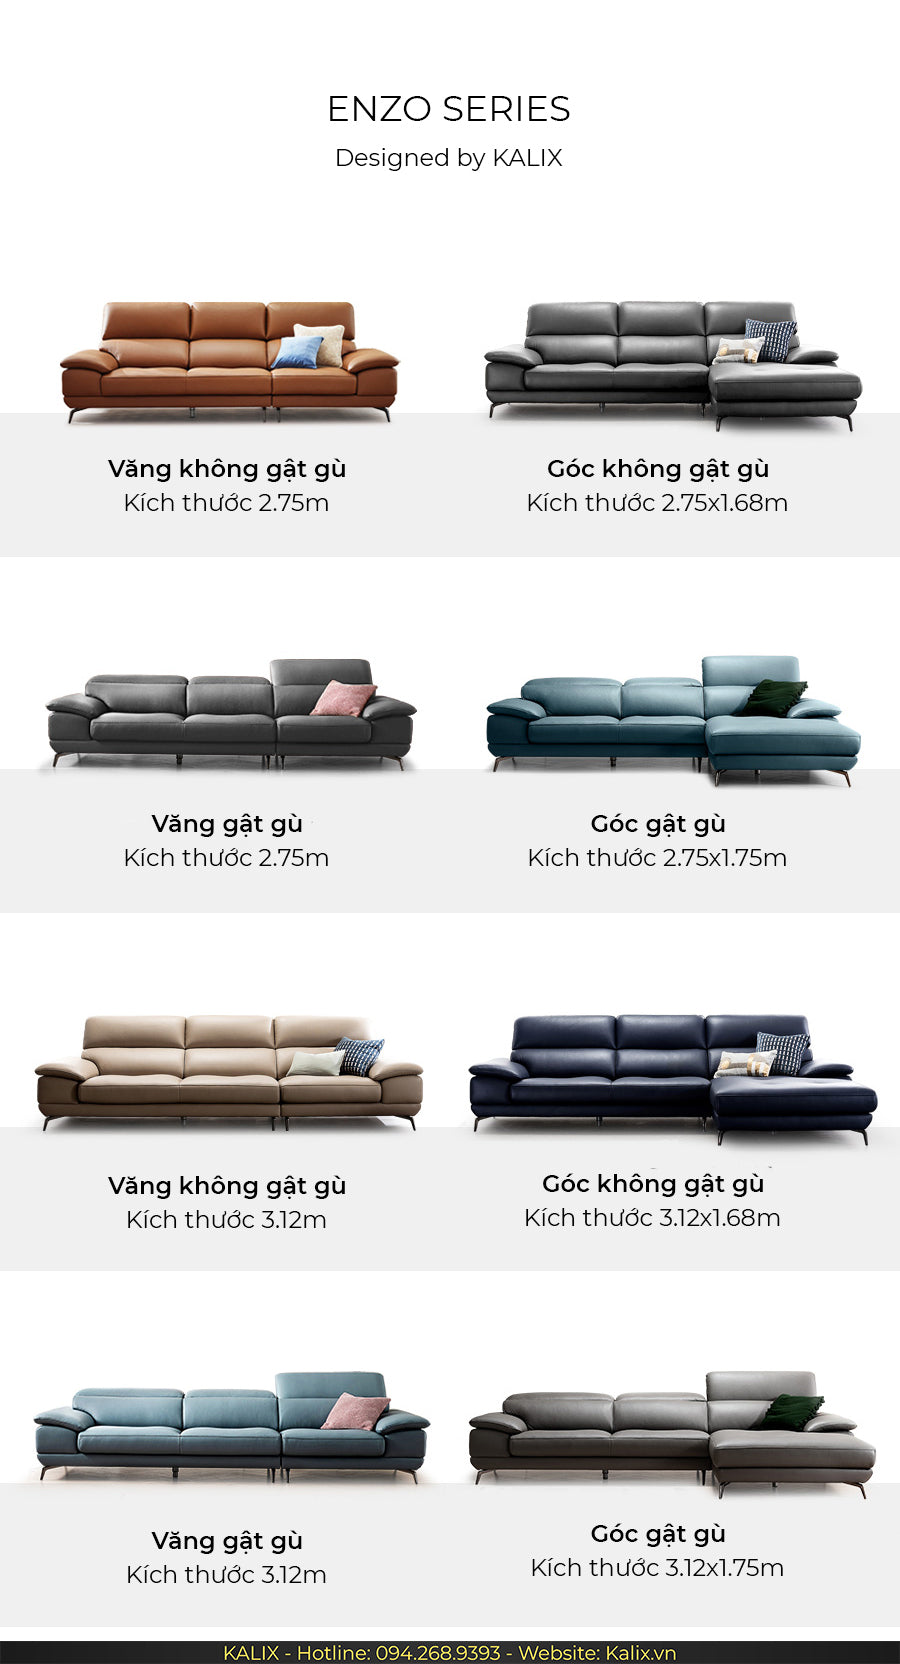 Các phiên bản khác nhau của sofa ENZO